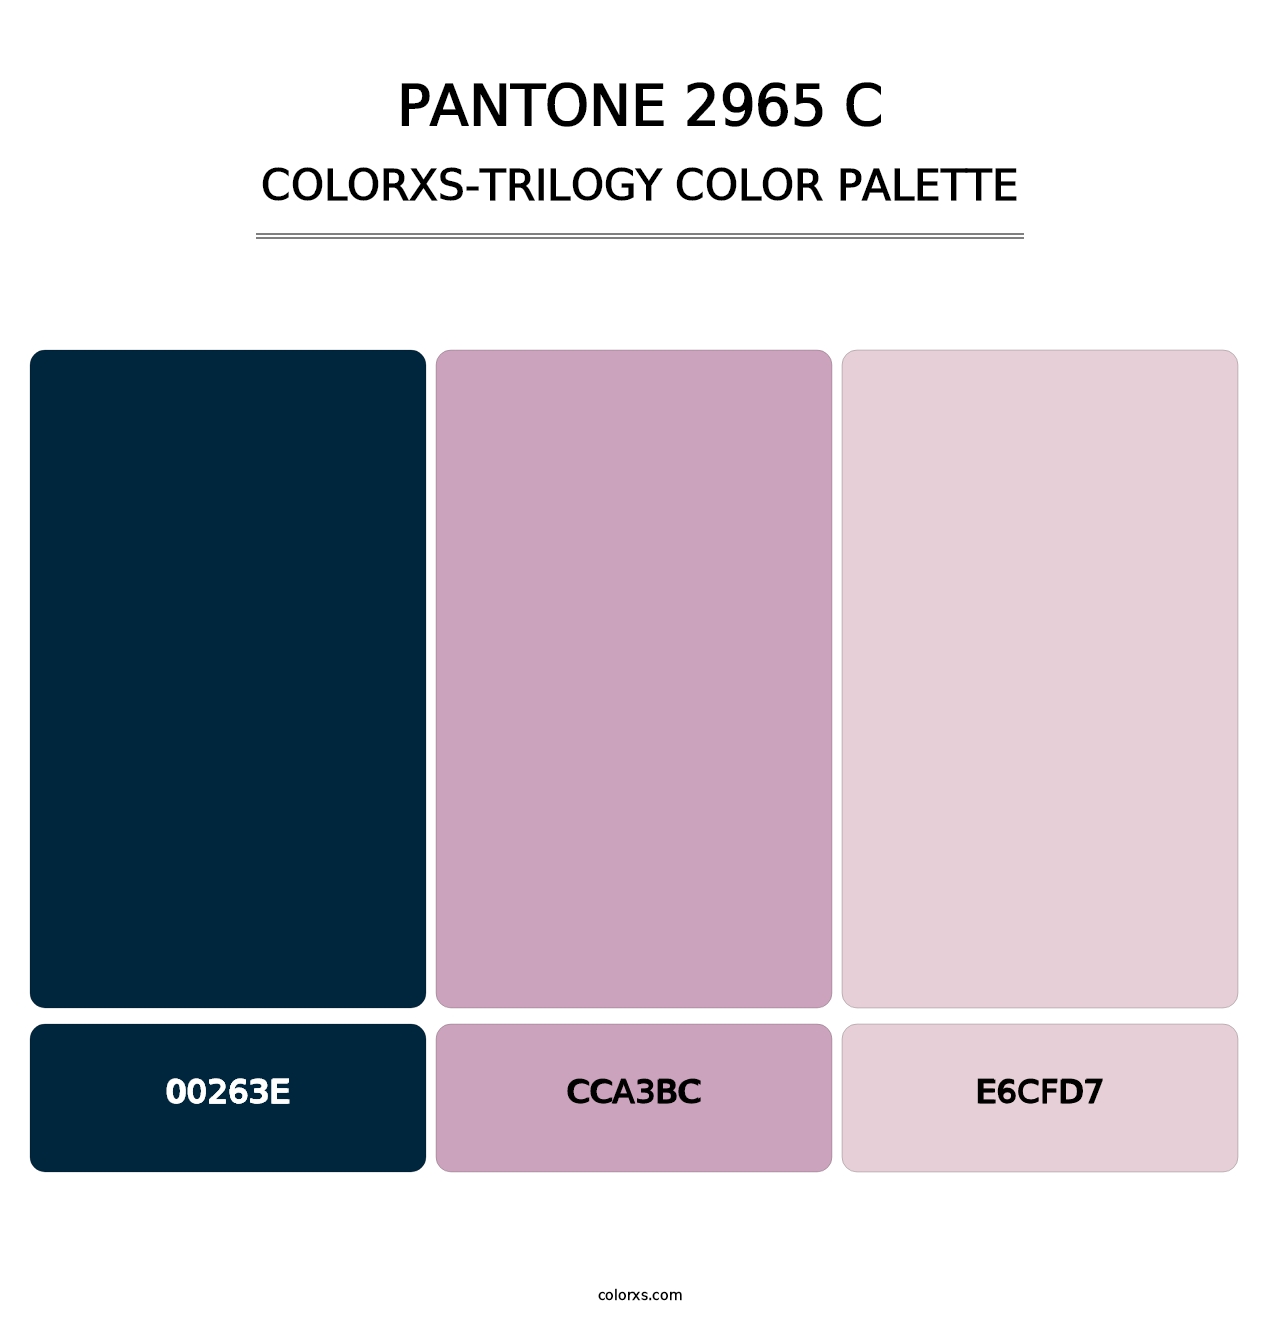 PANTONE 2965 C - Colorxs Trilogy Palette